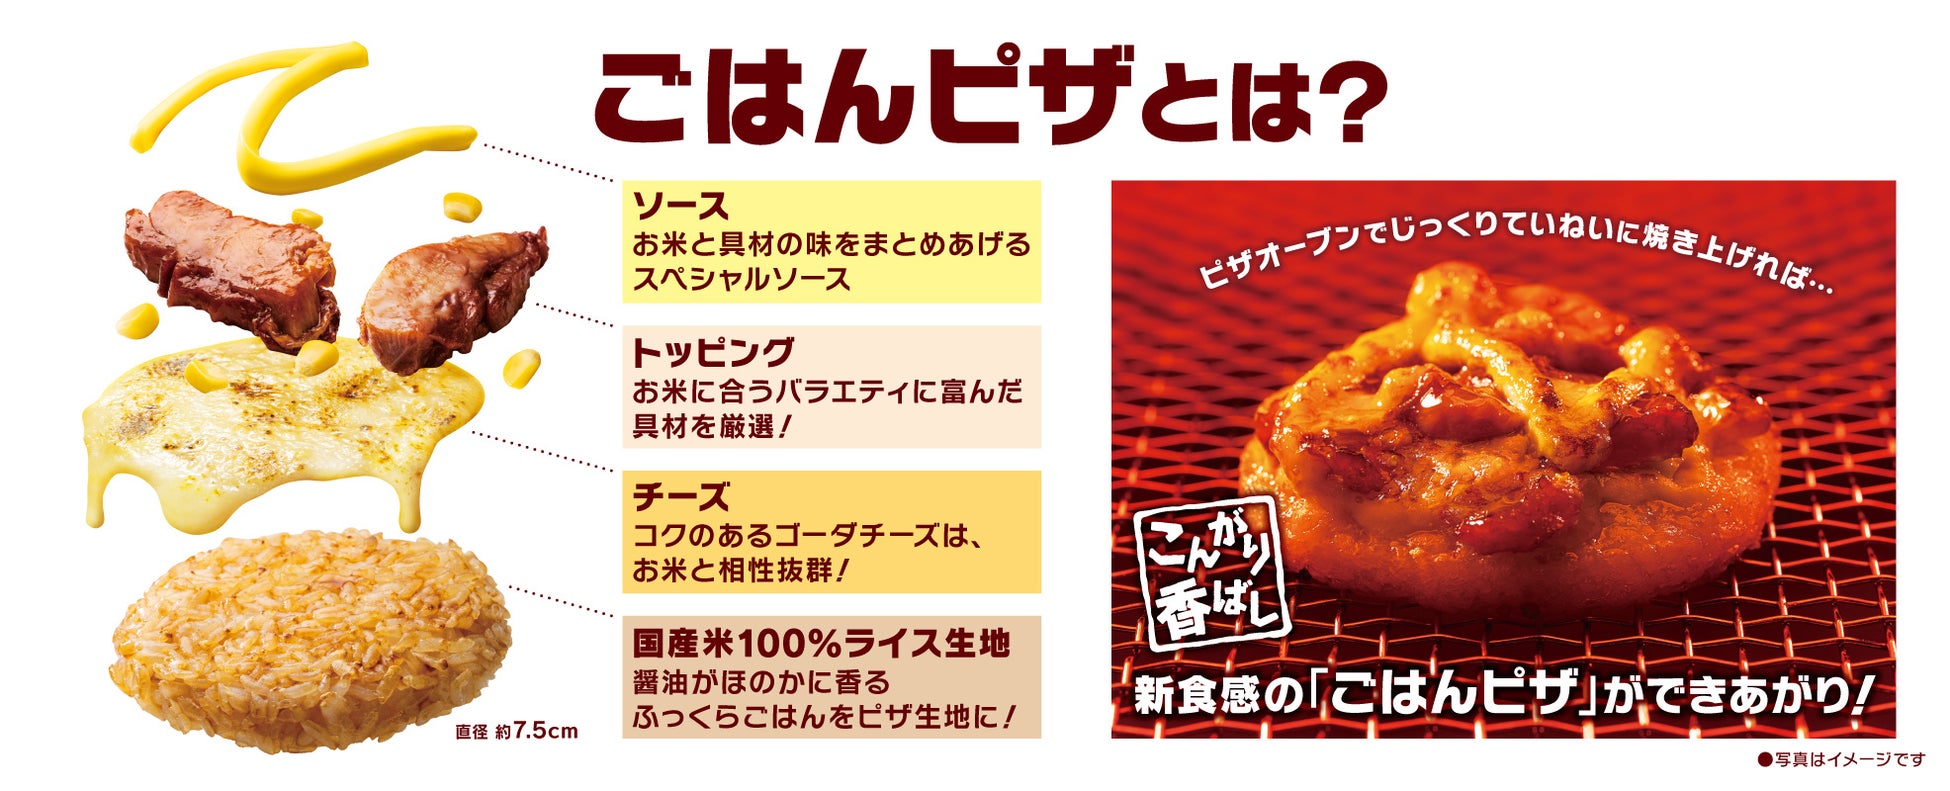 おひとりさまピザセット「MY BOX」から生地にお米を使った新感覚ピザが登場！「ごはんピザMY BOX」8月22日(月)より発売開始のサブ画像2